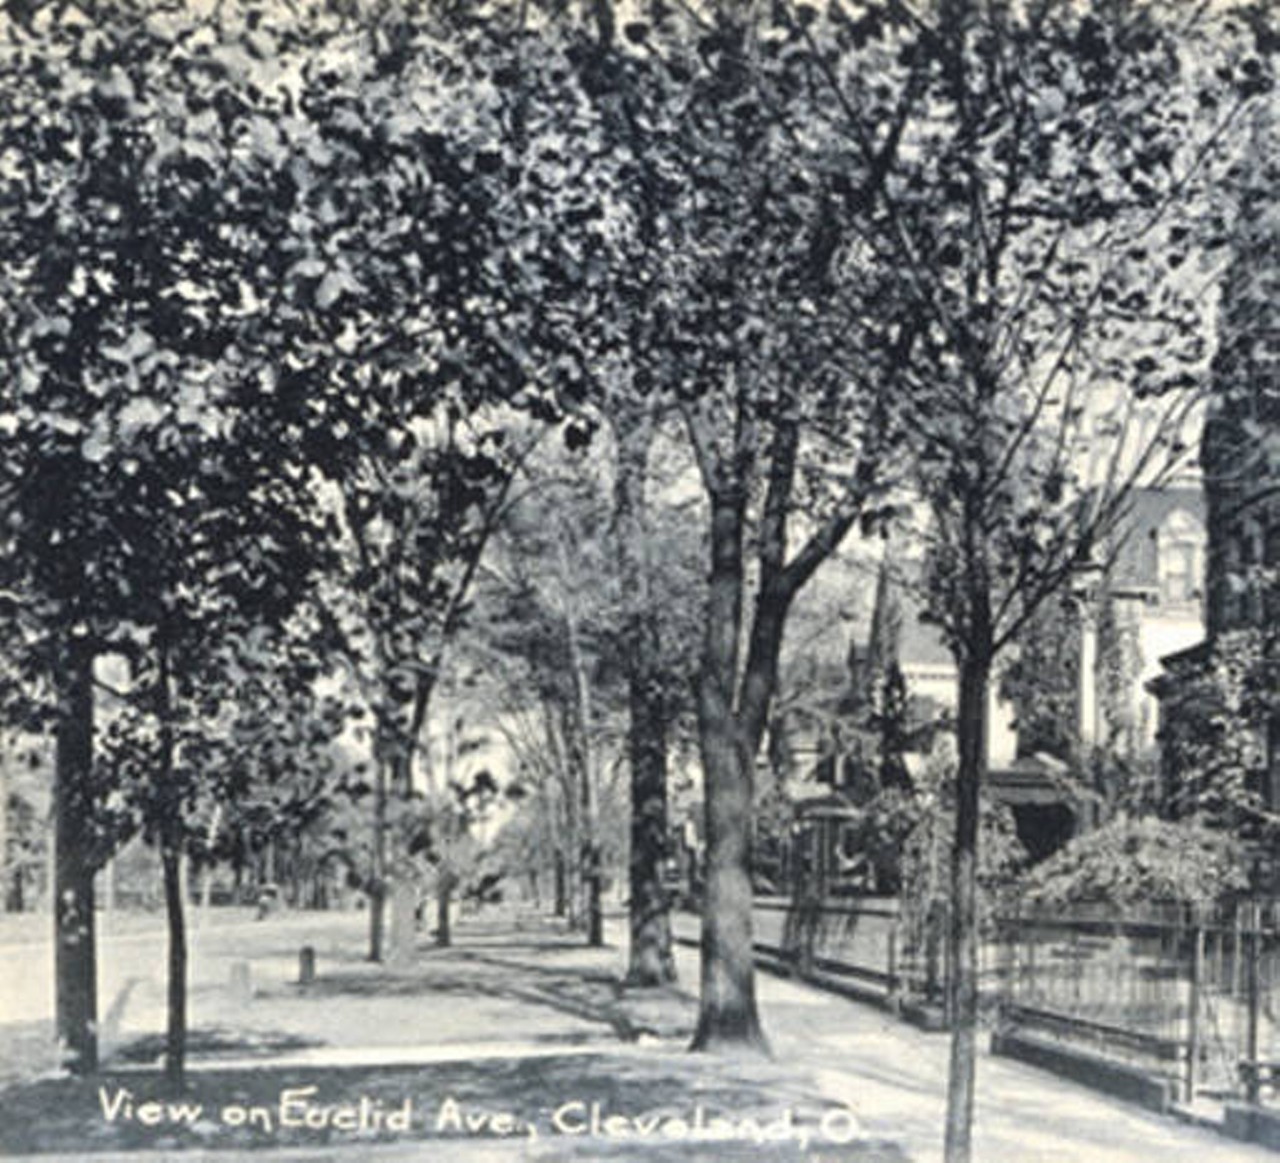 Along Millionaires' Row on Euclid Avenue. c. 1900